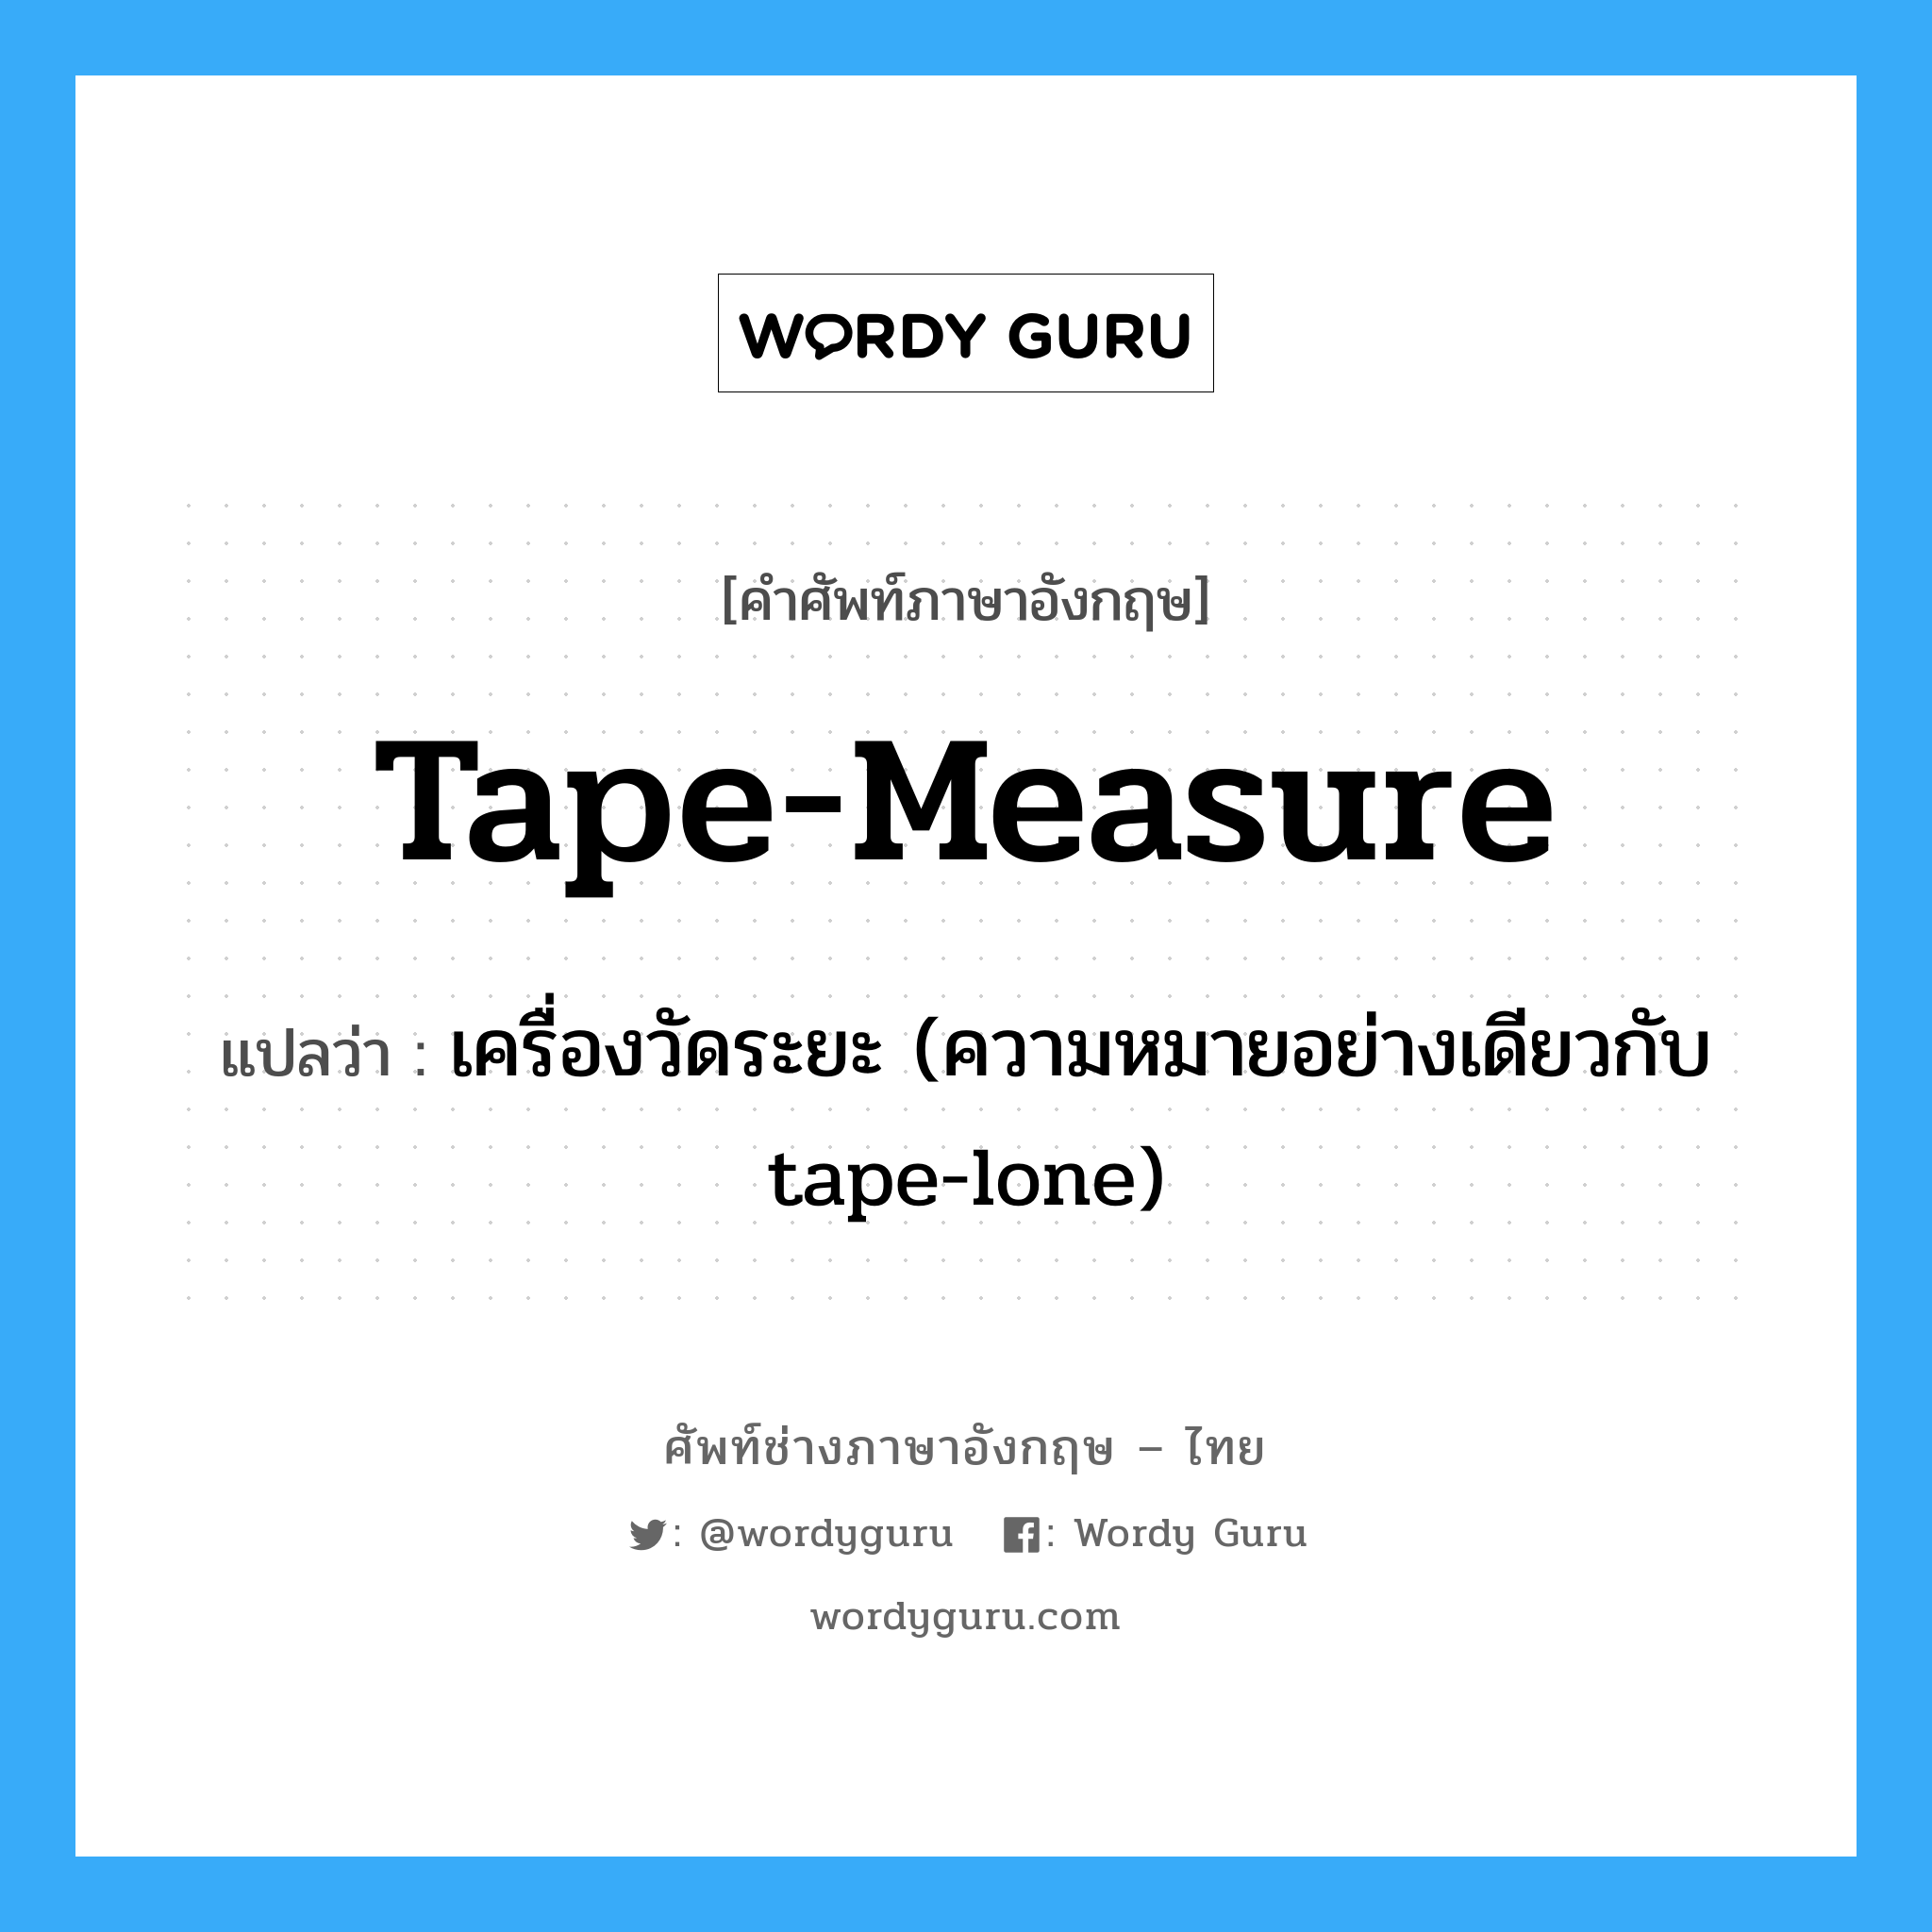 เครื่องวัดระยะ (ความหมายอย่างเดียวกับ tape-lone) ภาษาอังกฤษ?, คำศัพท์ช่างภาษาอังกฤษ - ไทย เครื่องวัดระยะ (ความหมายอย่างเดียวกับ tape-lone) คำศัพท์ภาษาอังกฤษ เครื่องวัดระยะ (ความหมายอย่างเดียวกับ tape-lone) แปลว่า tape-measure